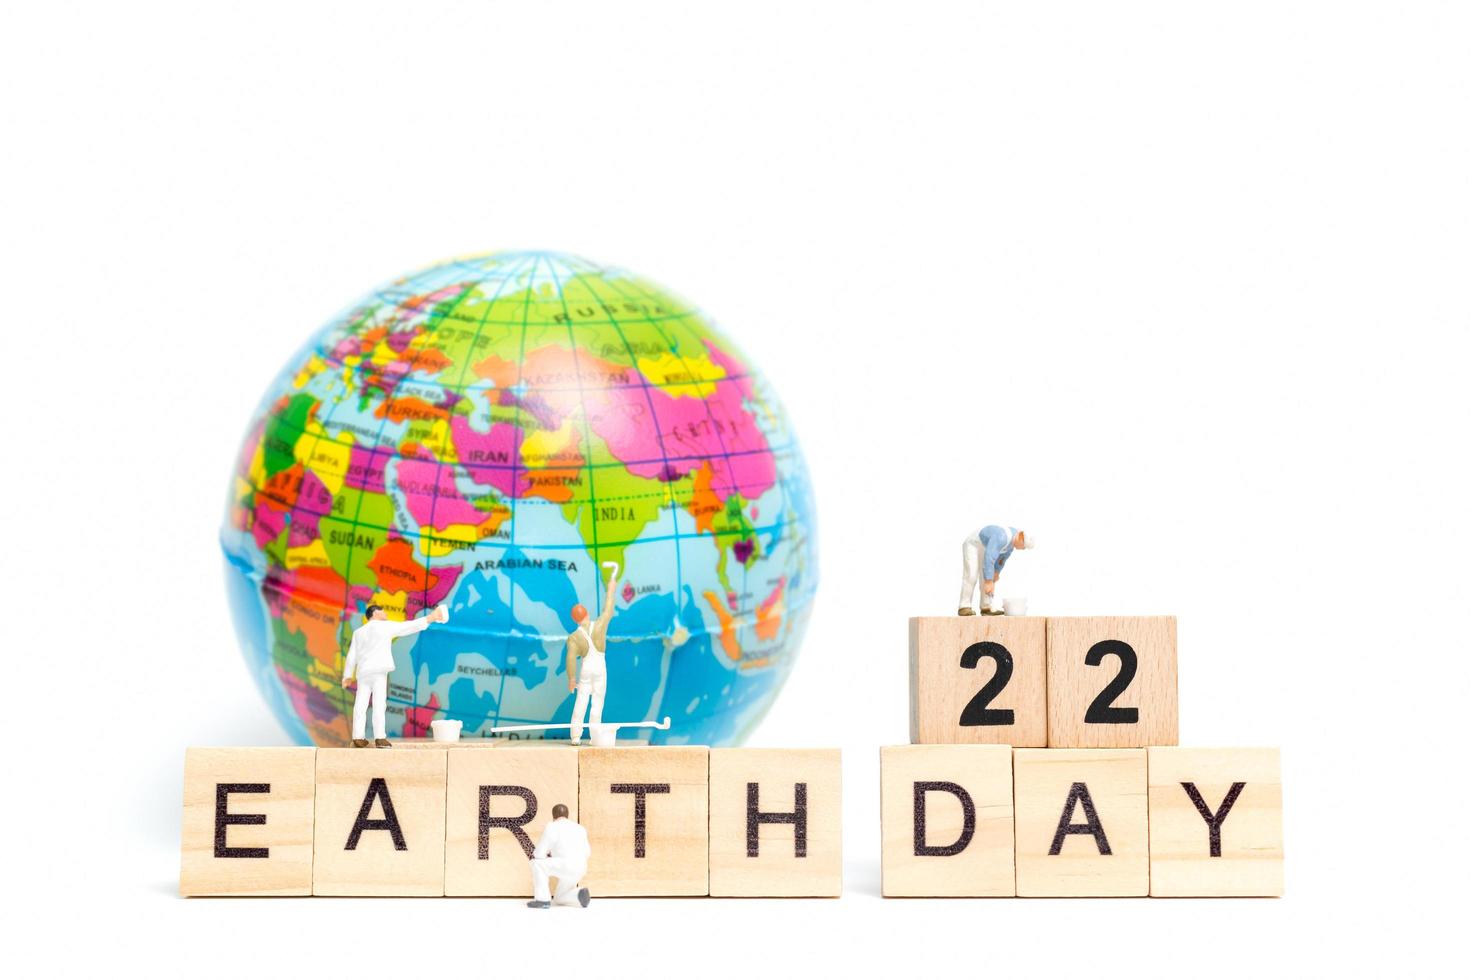 miniatuurschilders die op een wereldbol met houten blokken schilderen die dag 22 van de aarde op een witte achtergrond, het concept van de dag van de aarde tonen foto